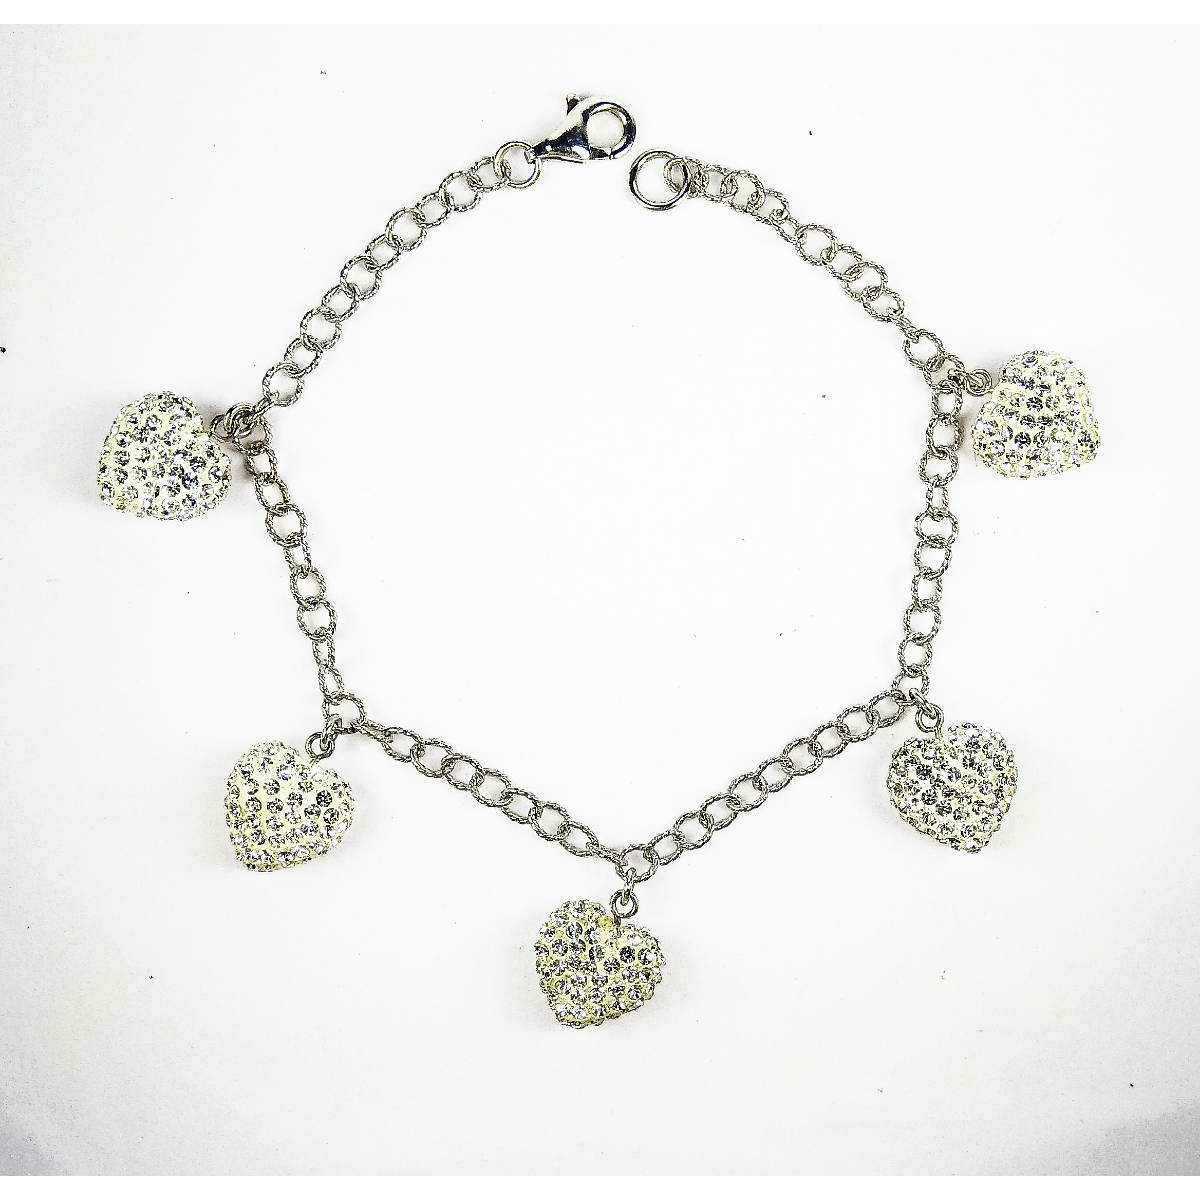 Fancy 925 Silver Ladies Bracelet With Stones In Heart Shape